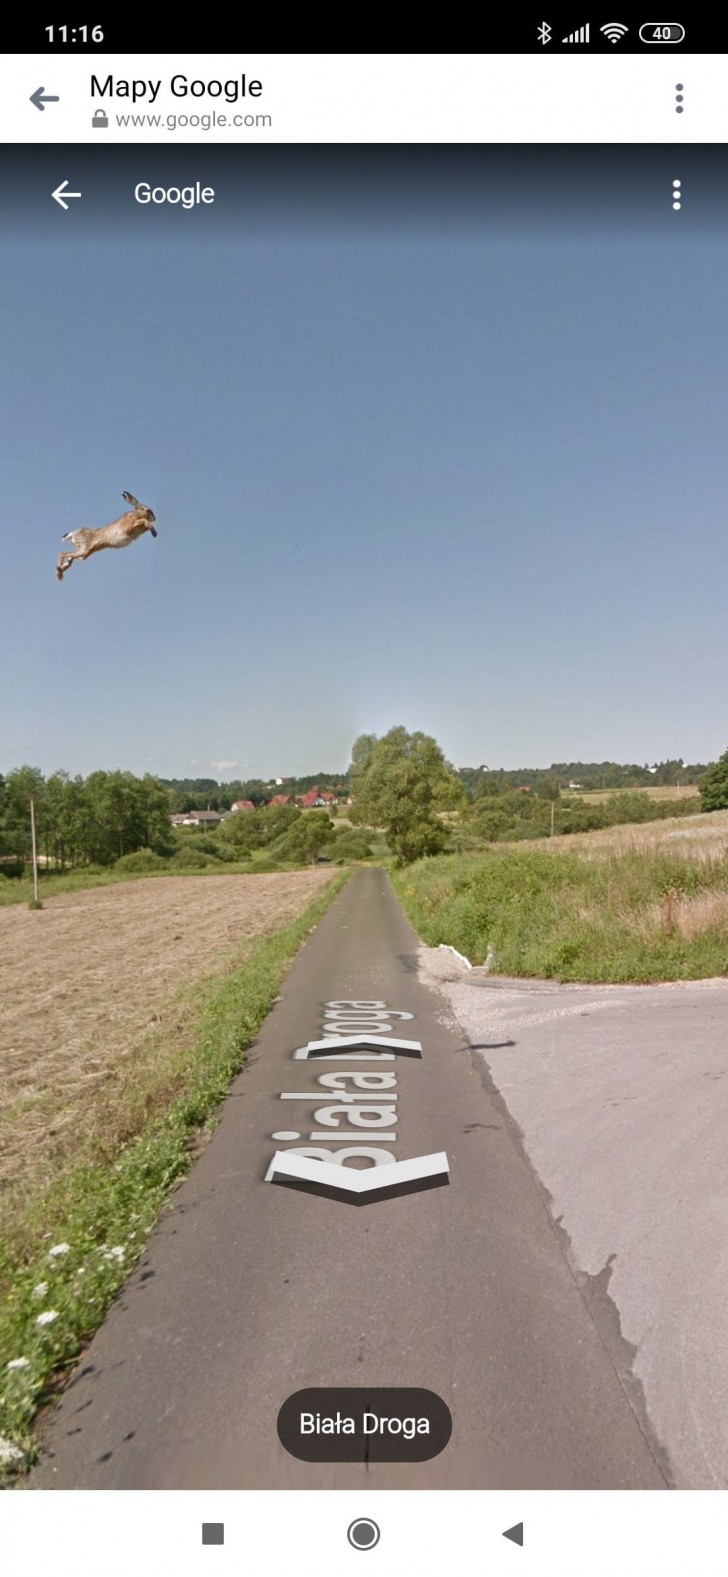 När Google Street View kommer i direktkontakt med vilda djur!